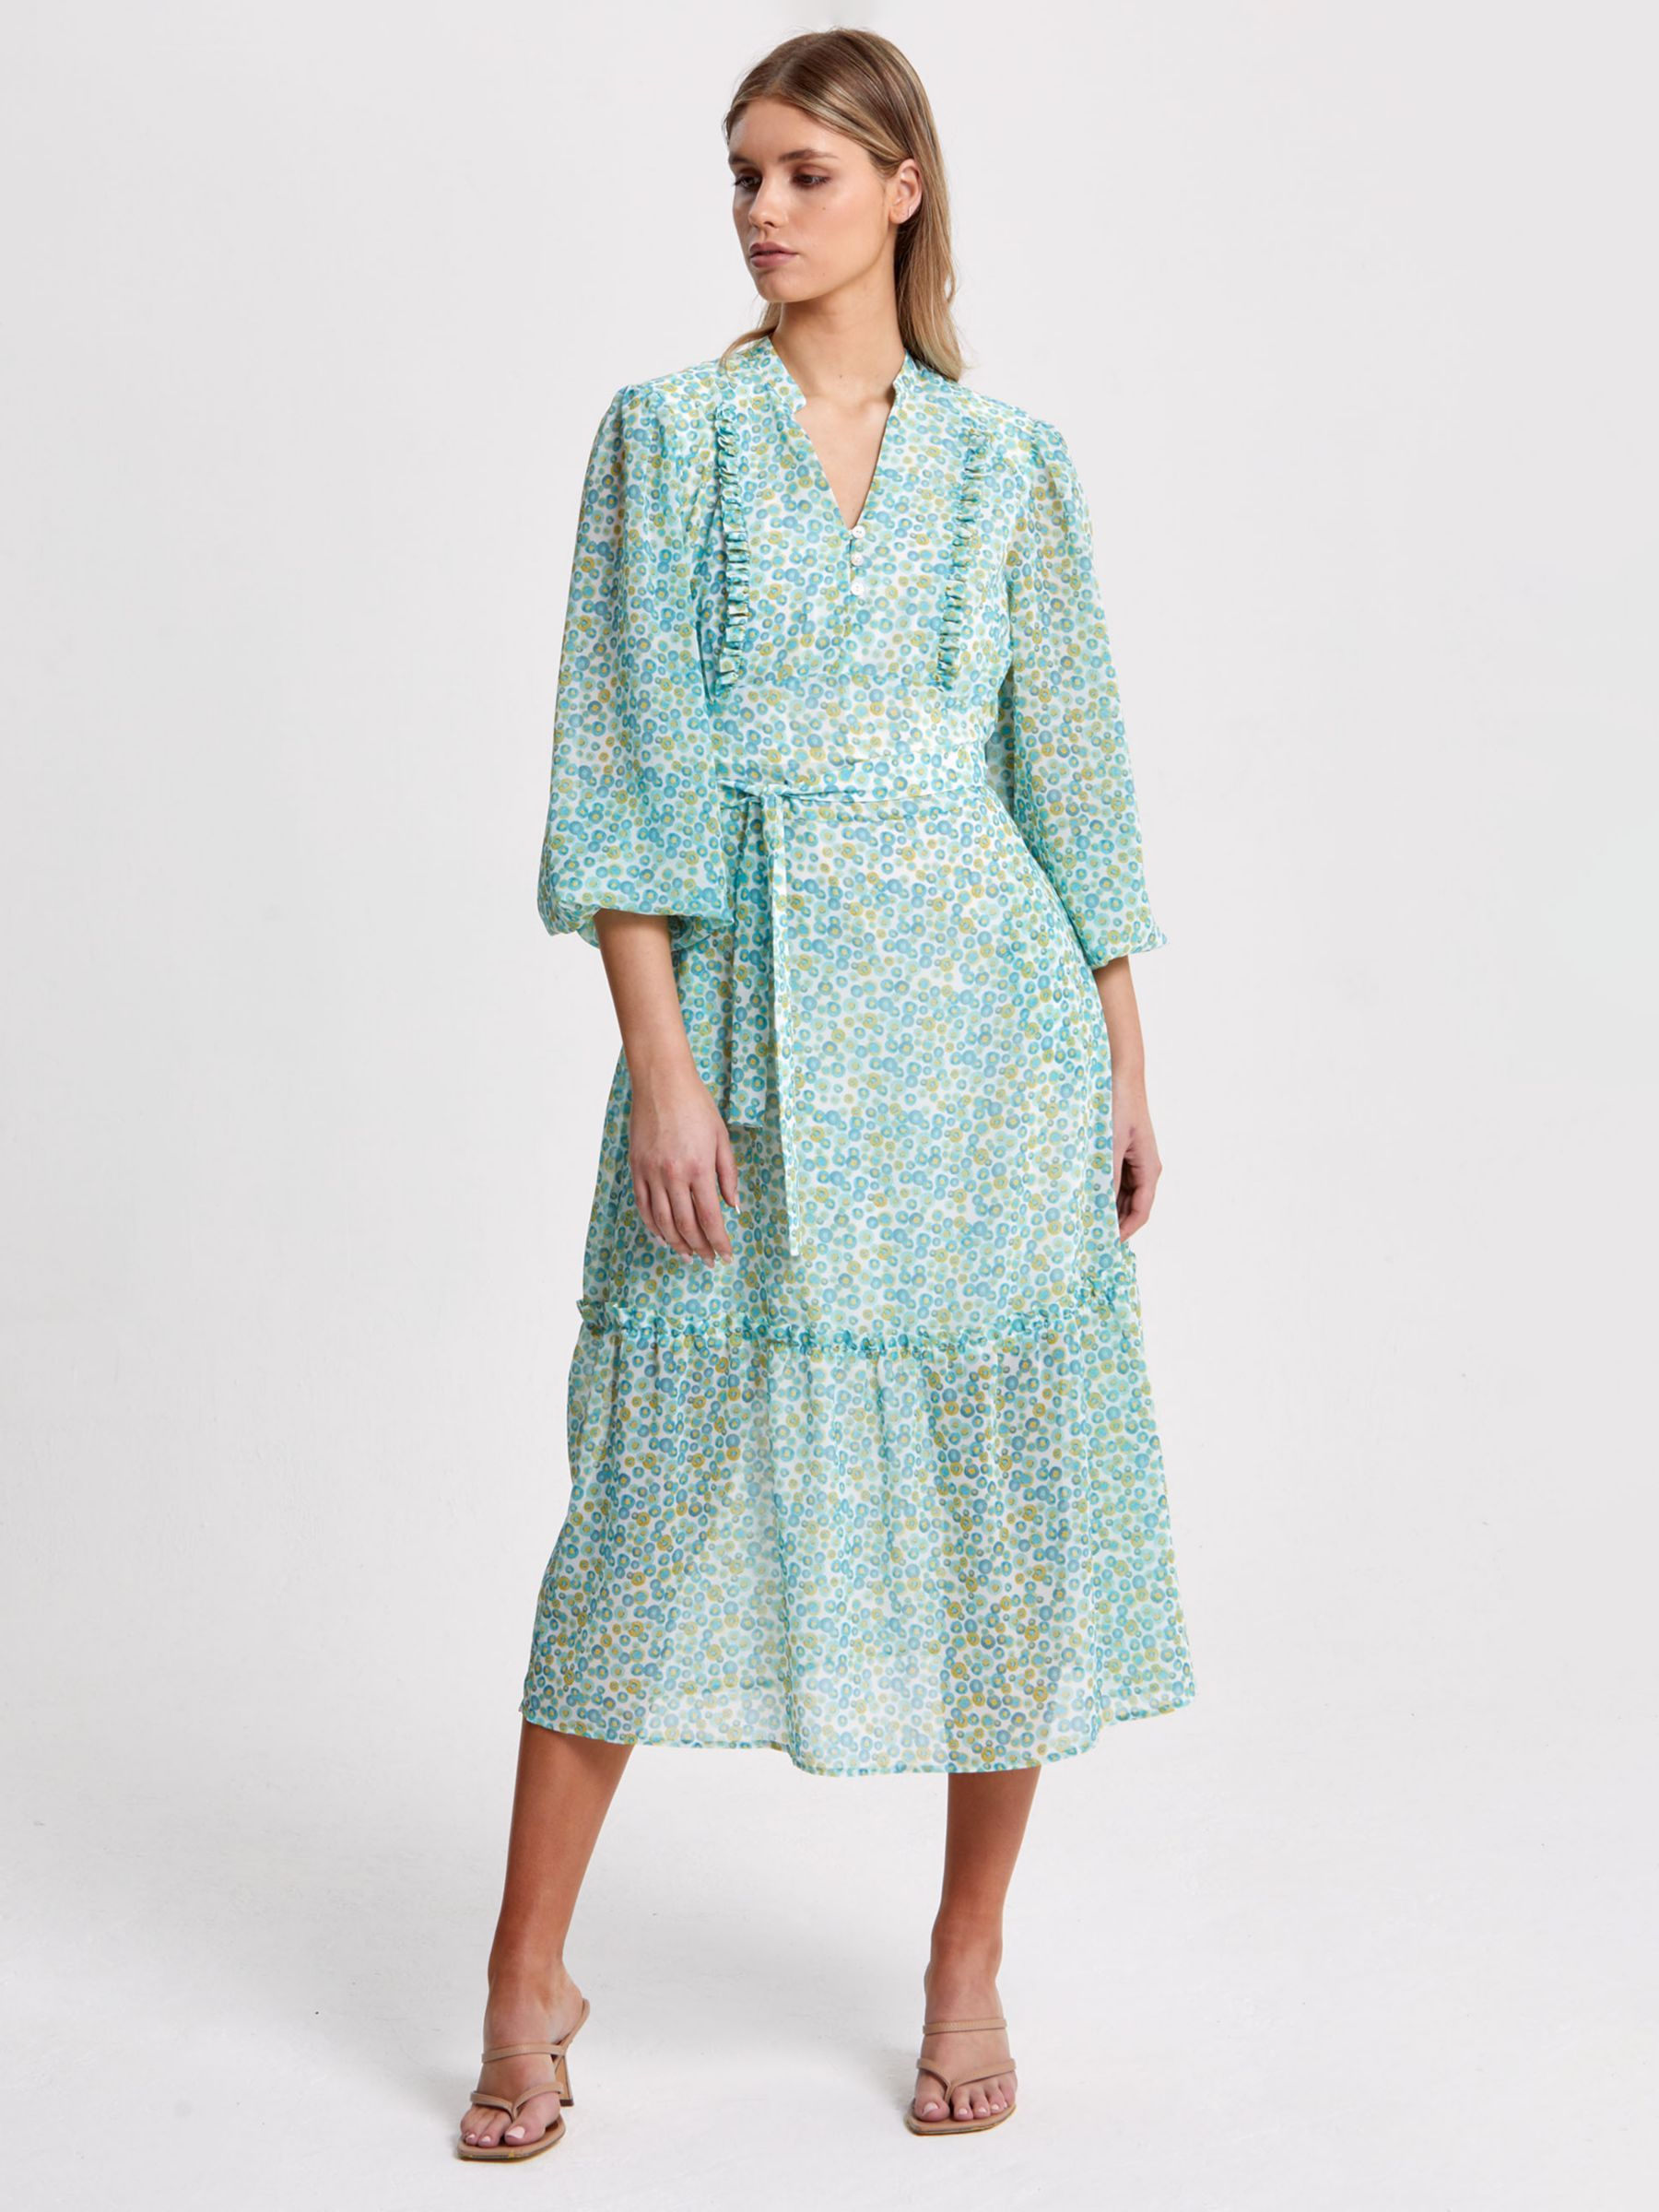 Helen McAlinden Bailey Smartie Print Dress, Multi, 8